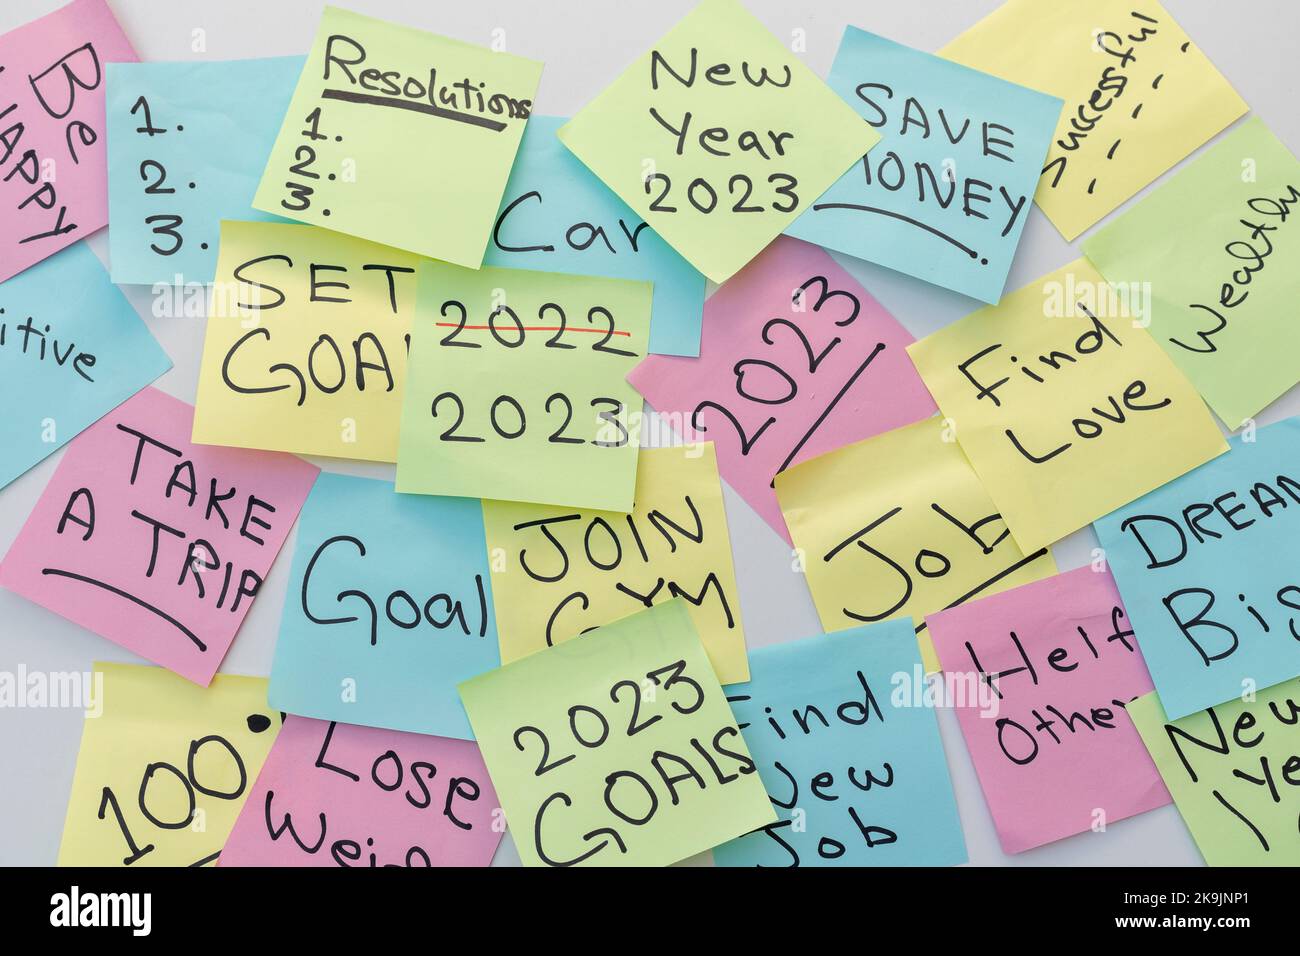 Gol e risoluzioni del nuovo anno 2023 scritte su note colorate Foto Stock